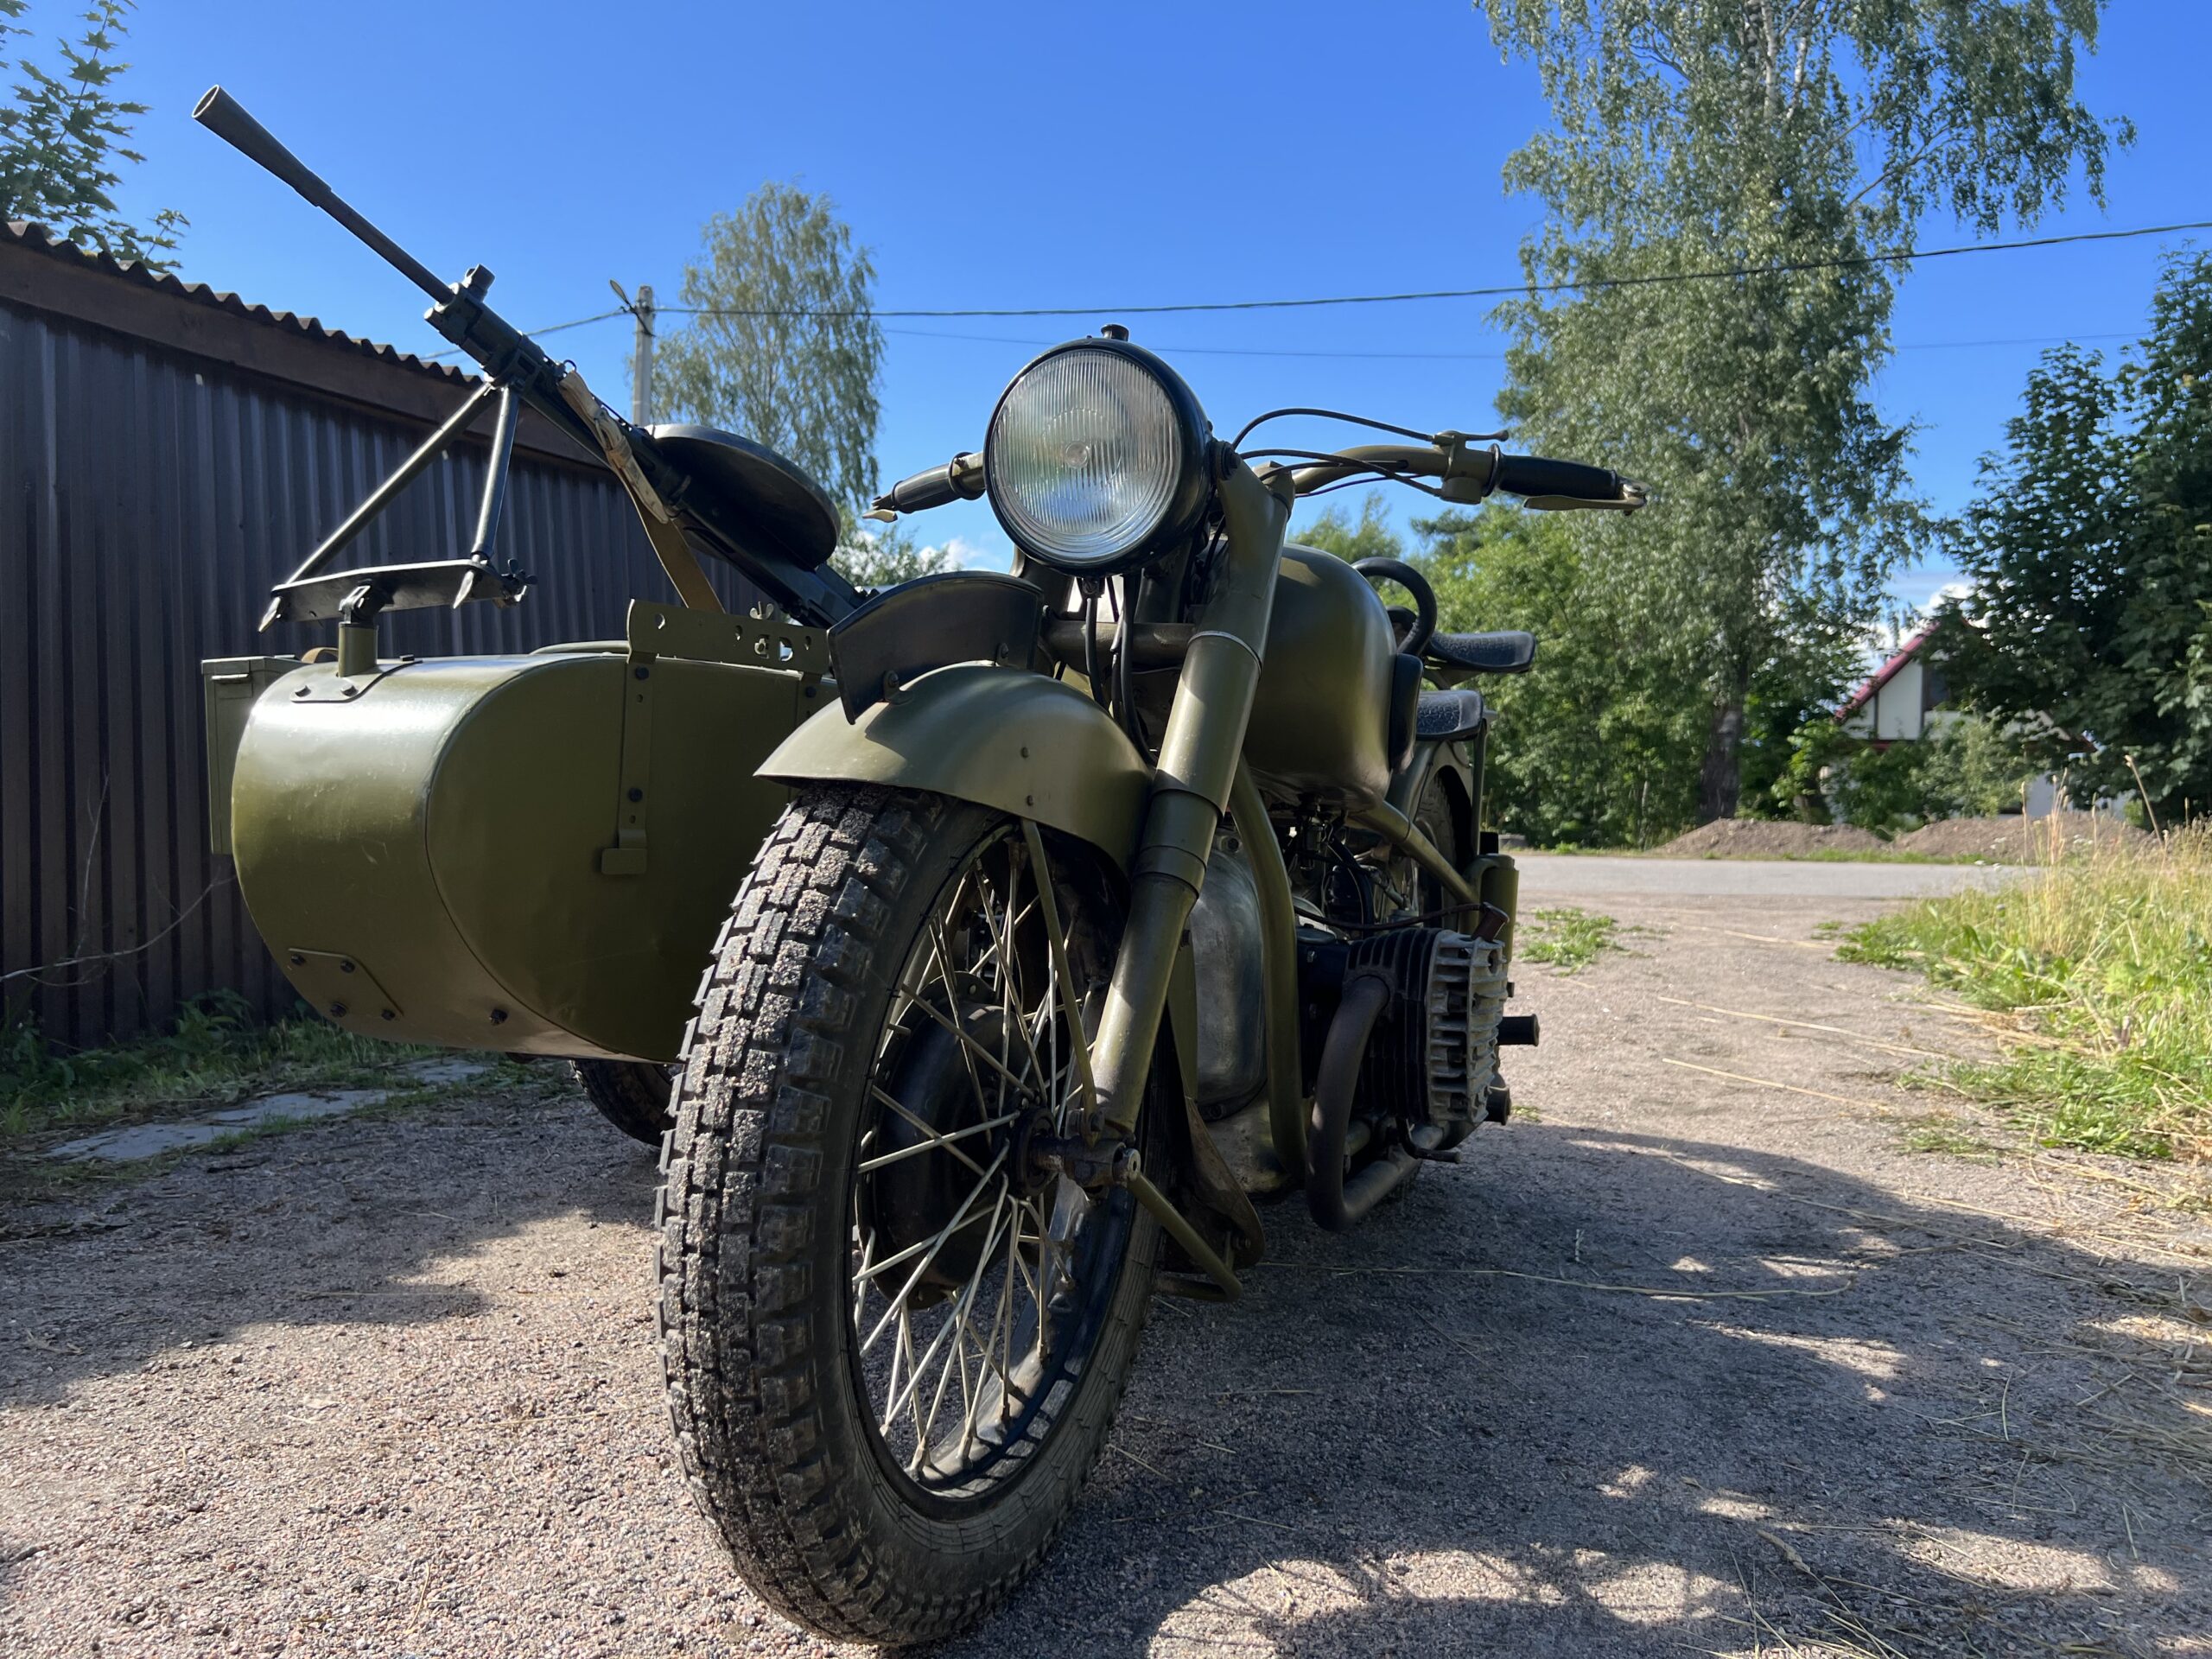 Мотоцикл М-72. Музейный экземпляр на войну. На учете с ПТС.